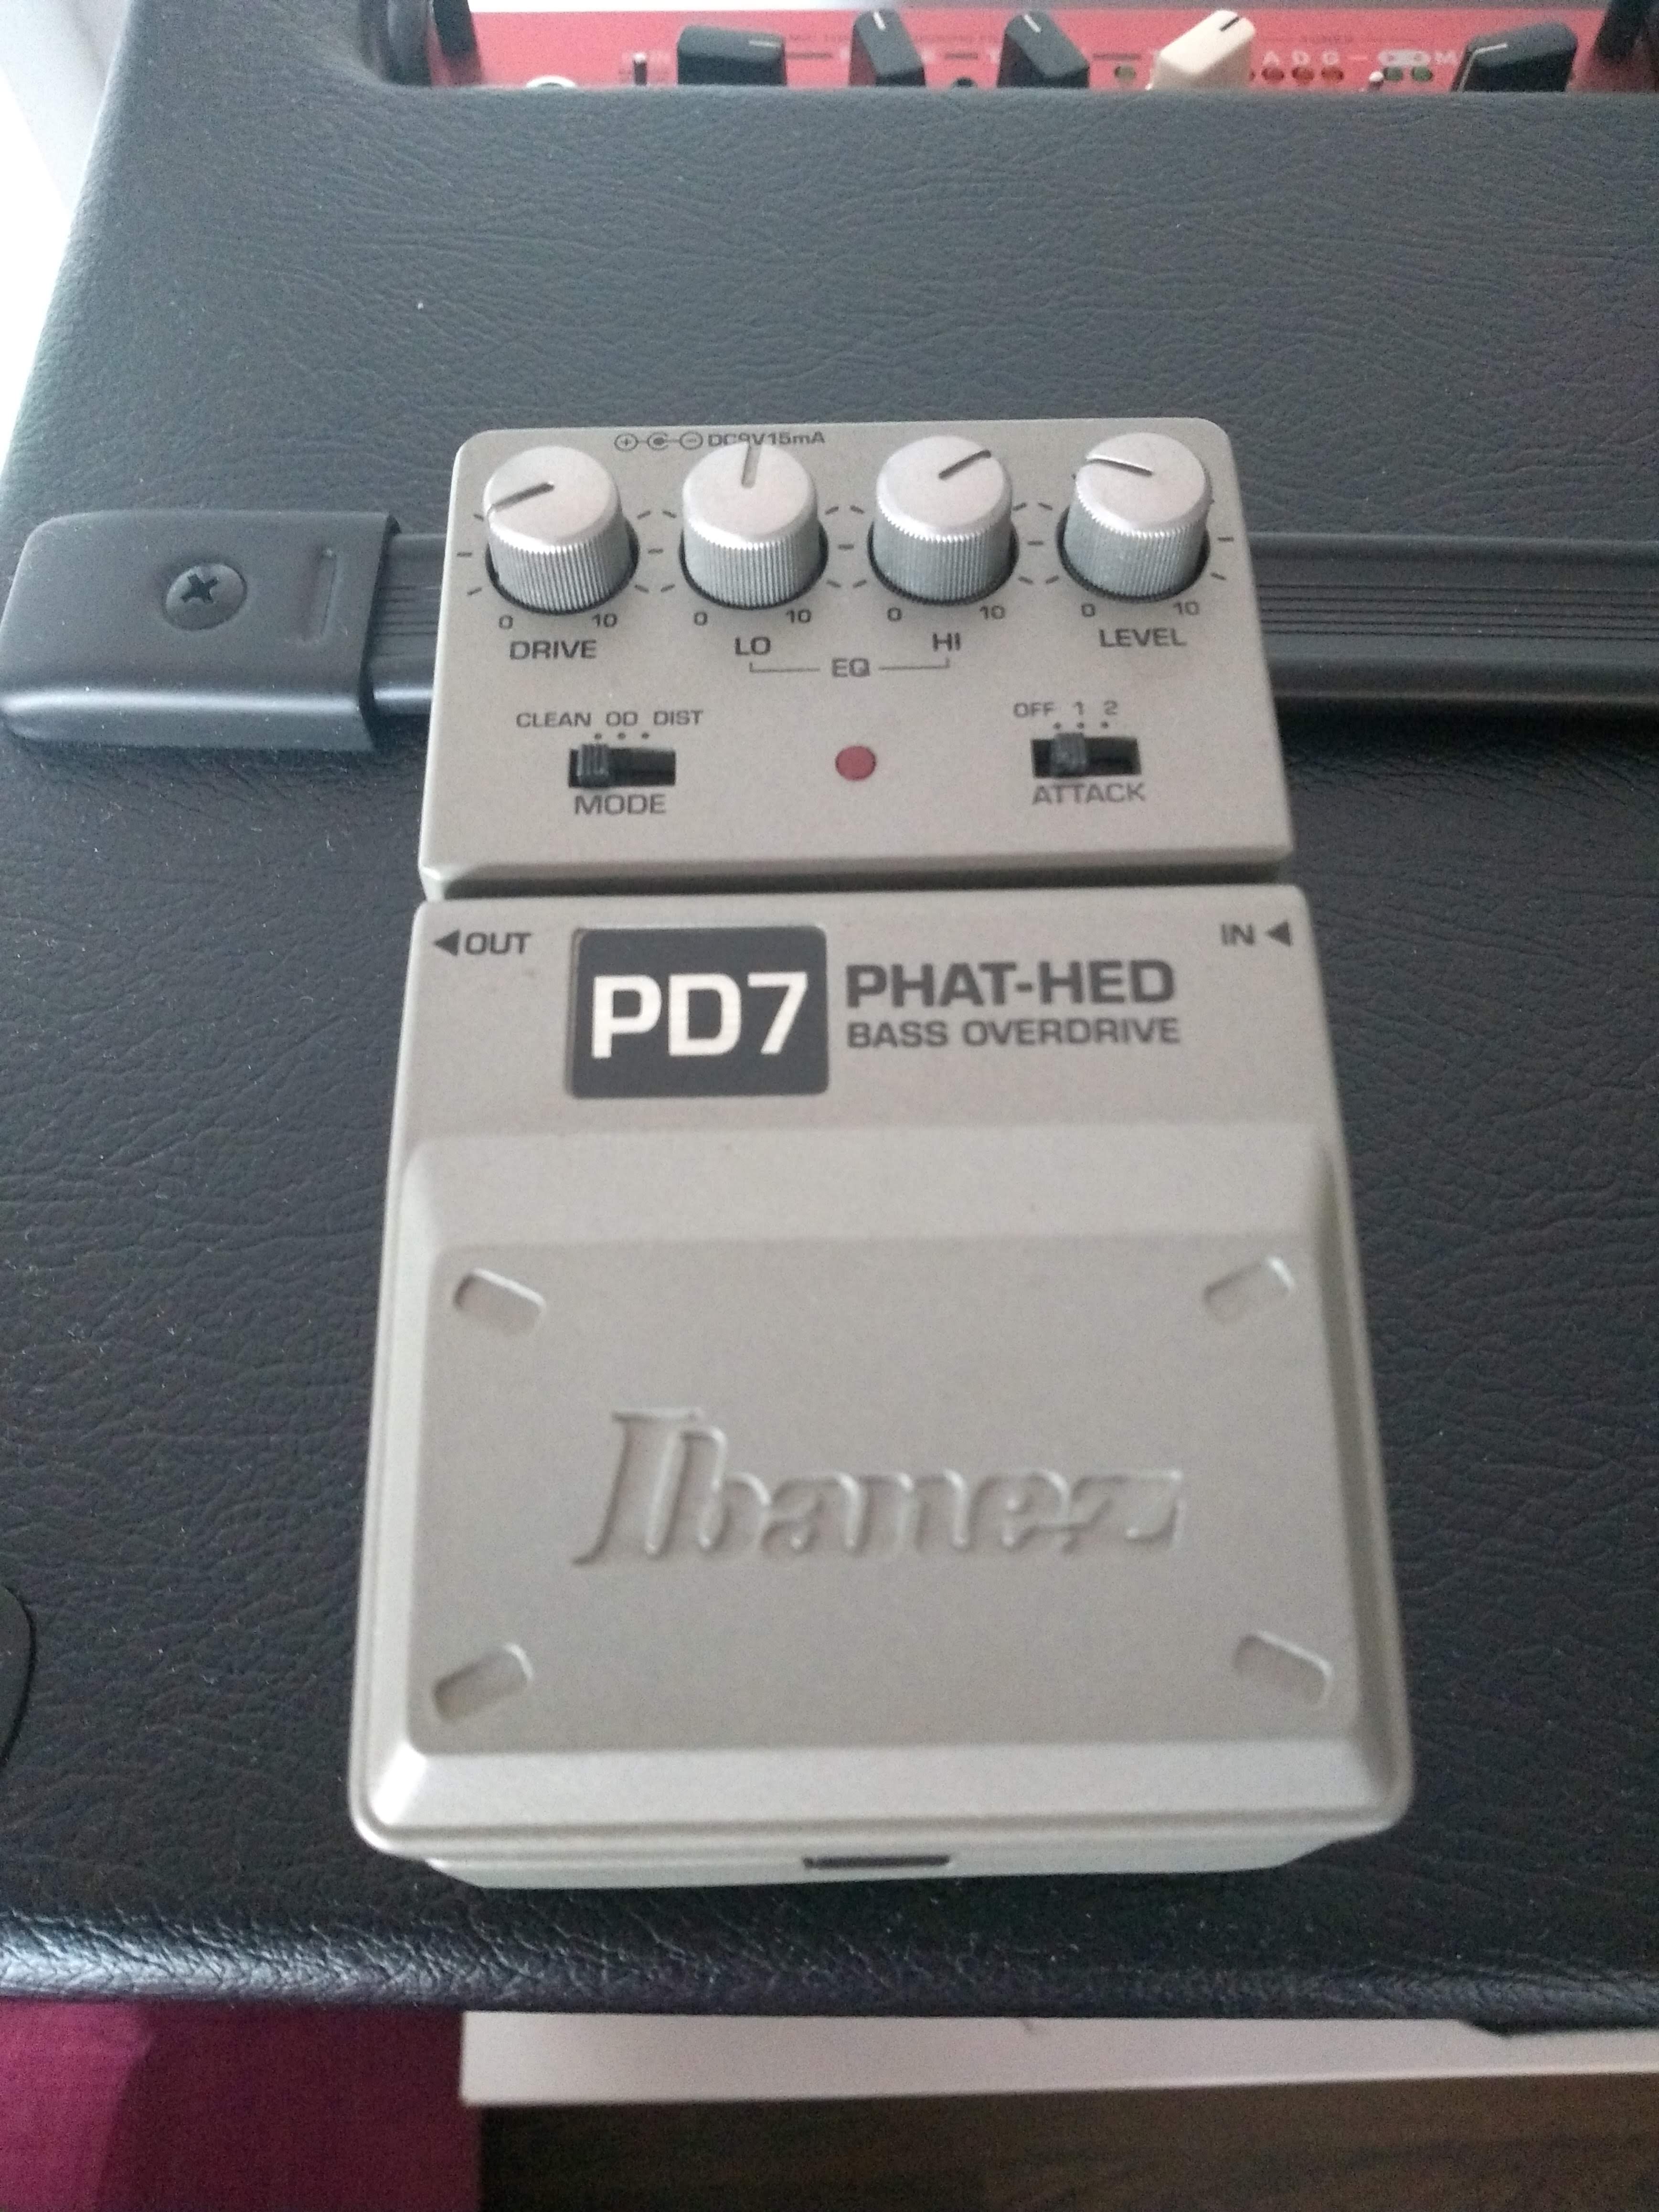 箱付き Ibanez PD7 PHAT-HED BASS OVERDRIVE+radiokameleon.ba